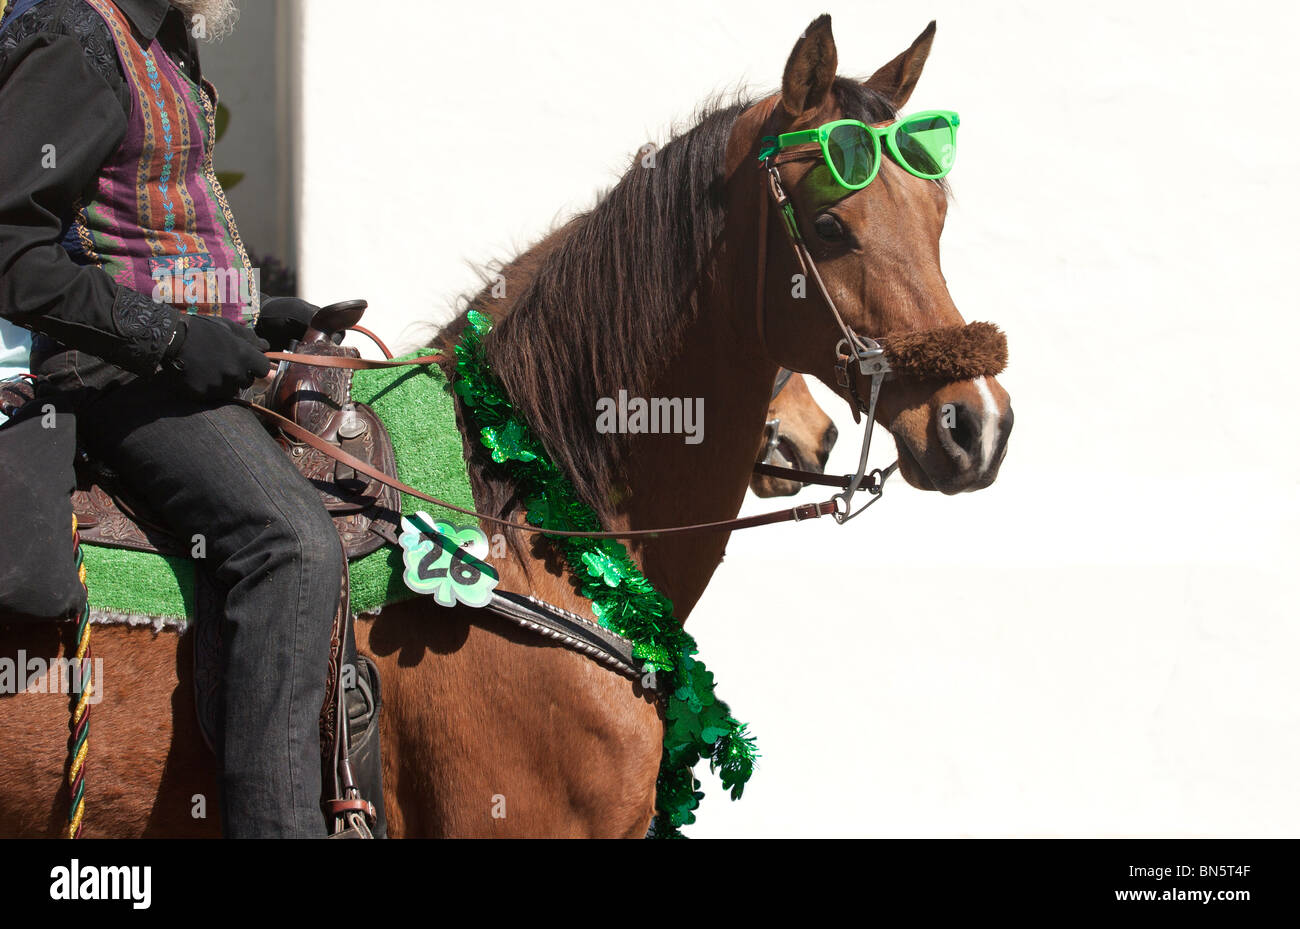 Parade-Pferd mit Sonnenbrille Stockfotografie - Alamy